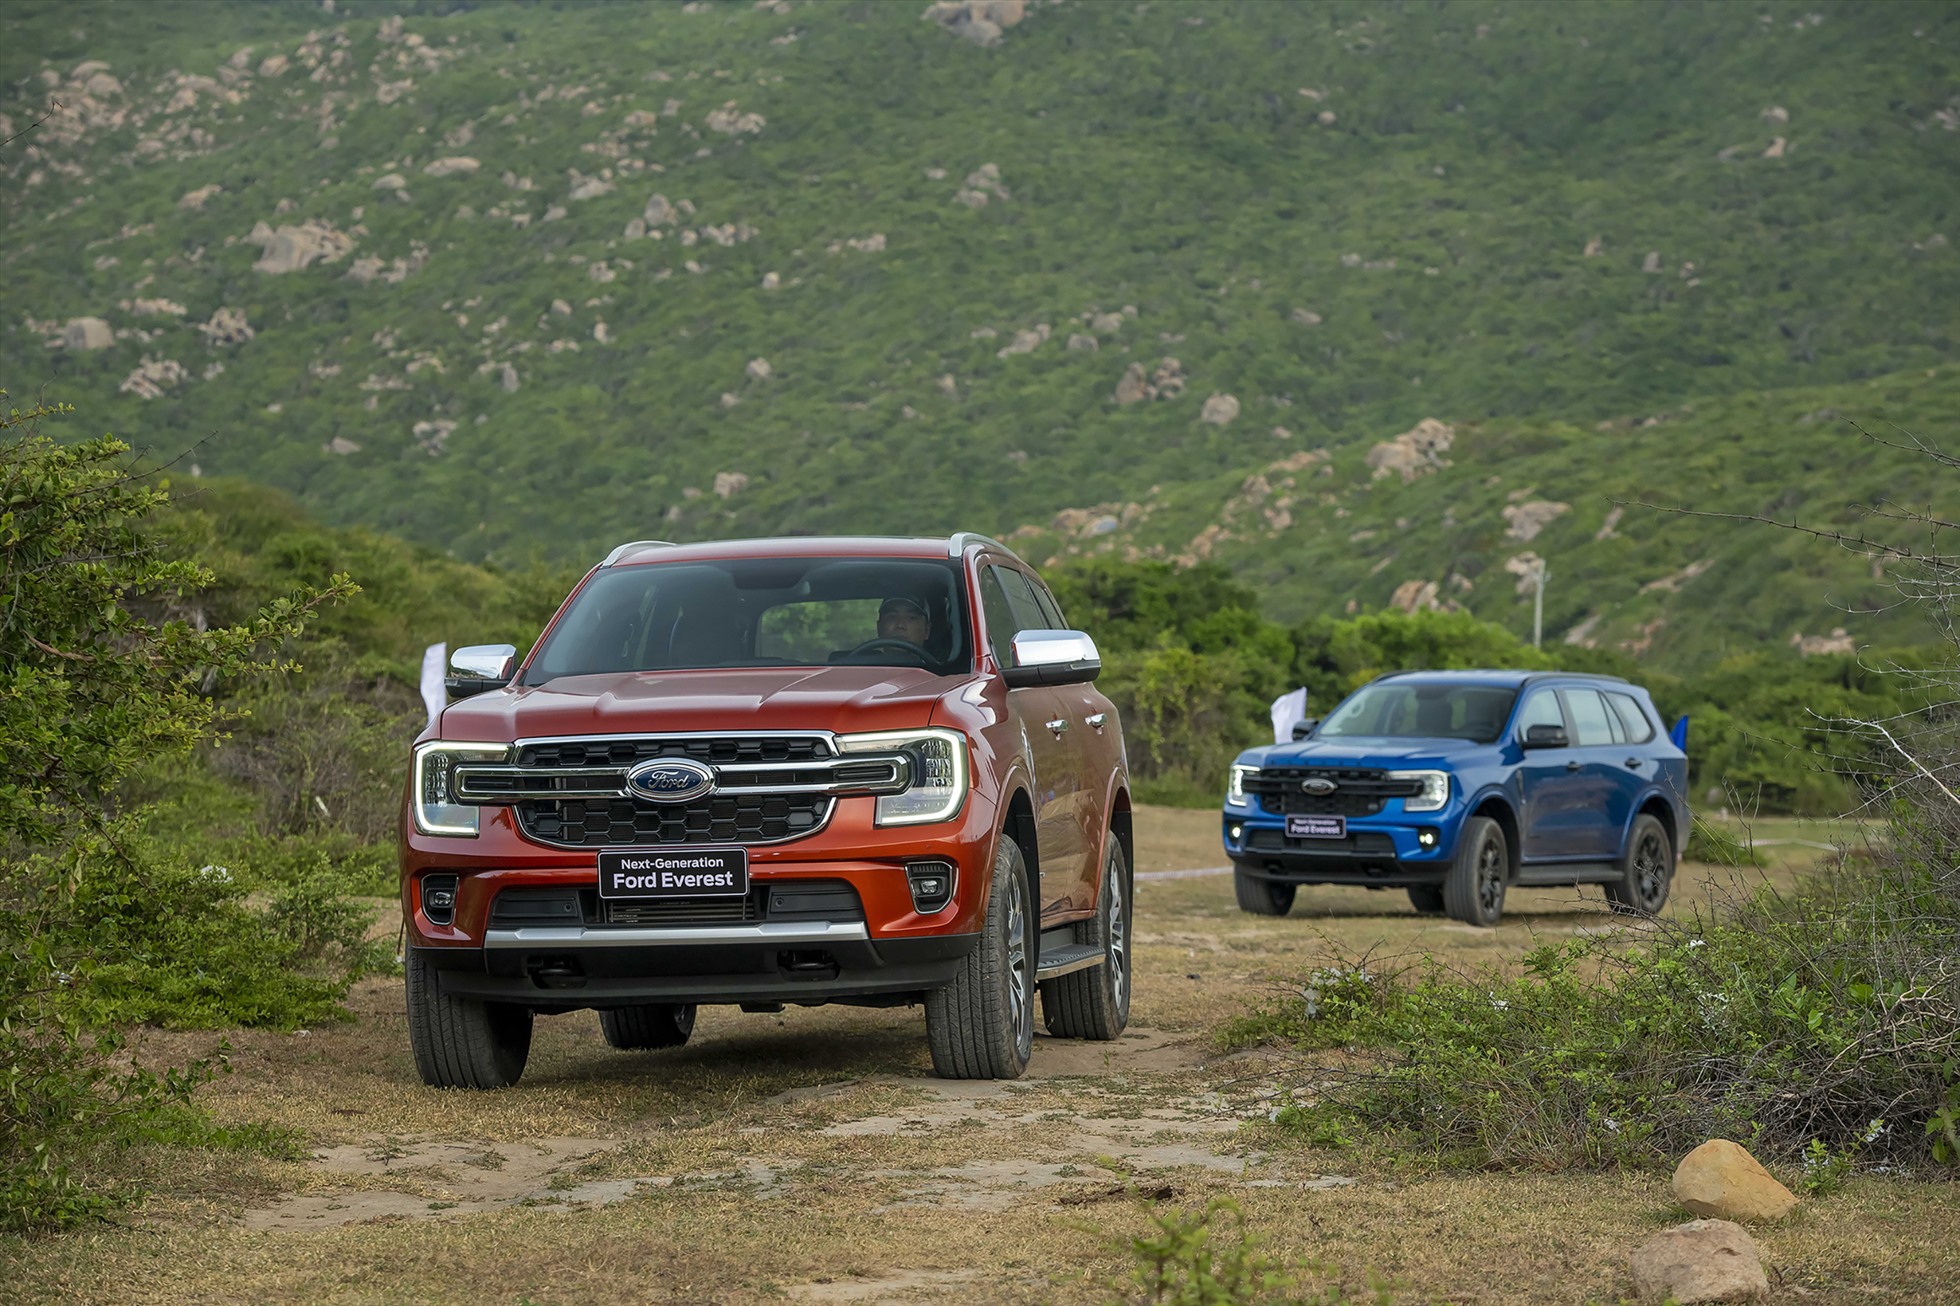 Ford Everest tiếp tục chiếm lĩnh vị trí đứng đầu phân khúc dù doanh số hồi tháng 2 vừa qua của mẫu SUV này chỉ đạt 651 chiếc, tổng 2 tháng đầu năm 2023 đã có 1.421 chiếc Ford Everest được bán ra. Con số không quá lớn nhưng cũng đủ sức giúp chiến binh của Ford giữ vững vị trí thủ lĩnh nhóm và tạo cách biệt trước đối thủ Hyundai SantaFe. Kể từ khi ra mắt thế hệ mới hồi cuối năm 2022, Ford Everest đã giữ vững vị trí top 1 phân khúc. Ảnh: Ford.